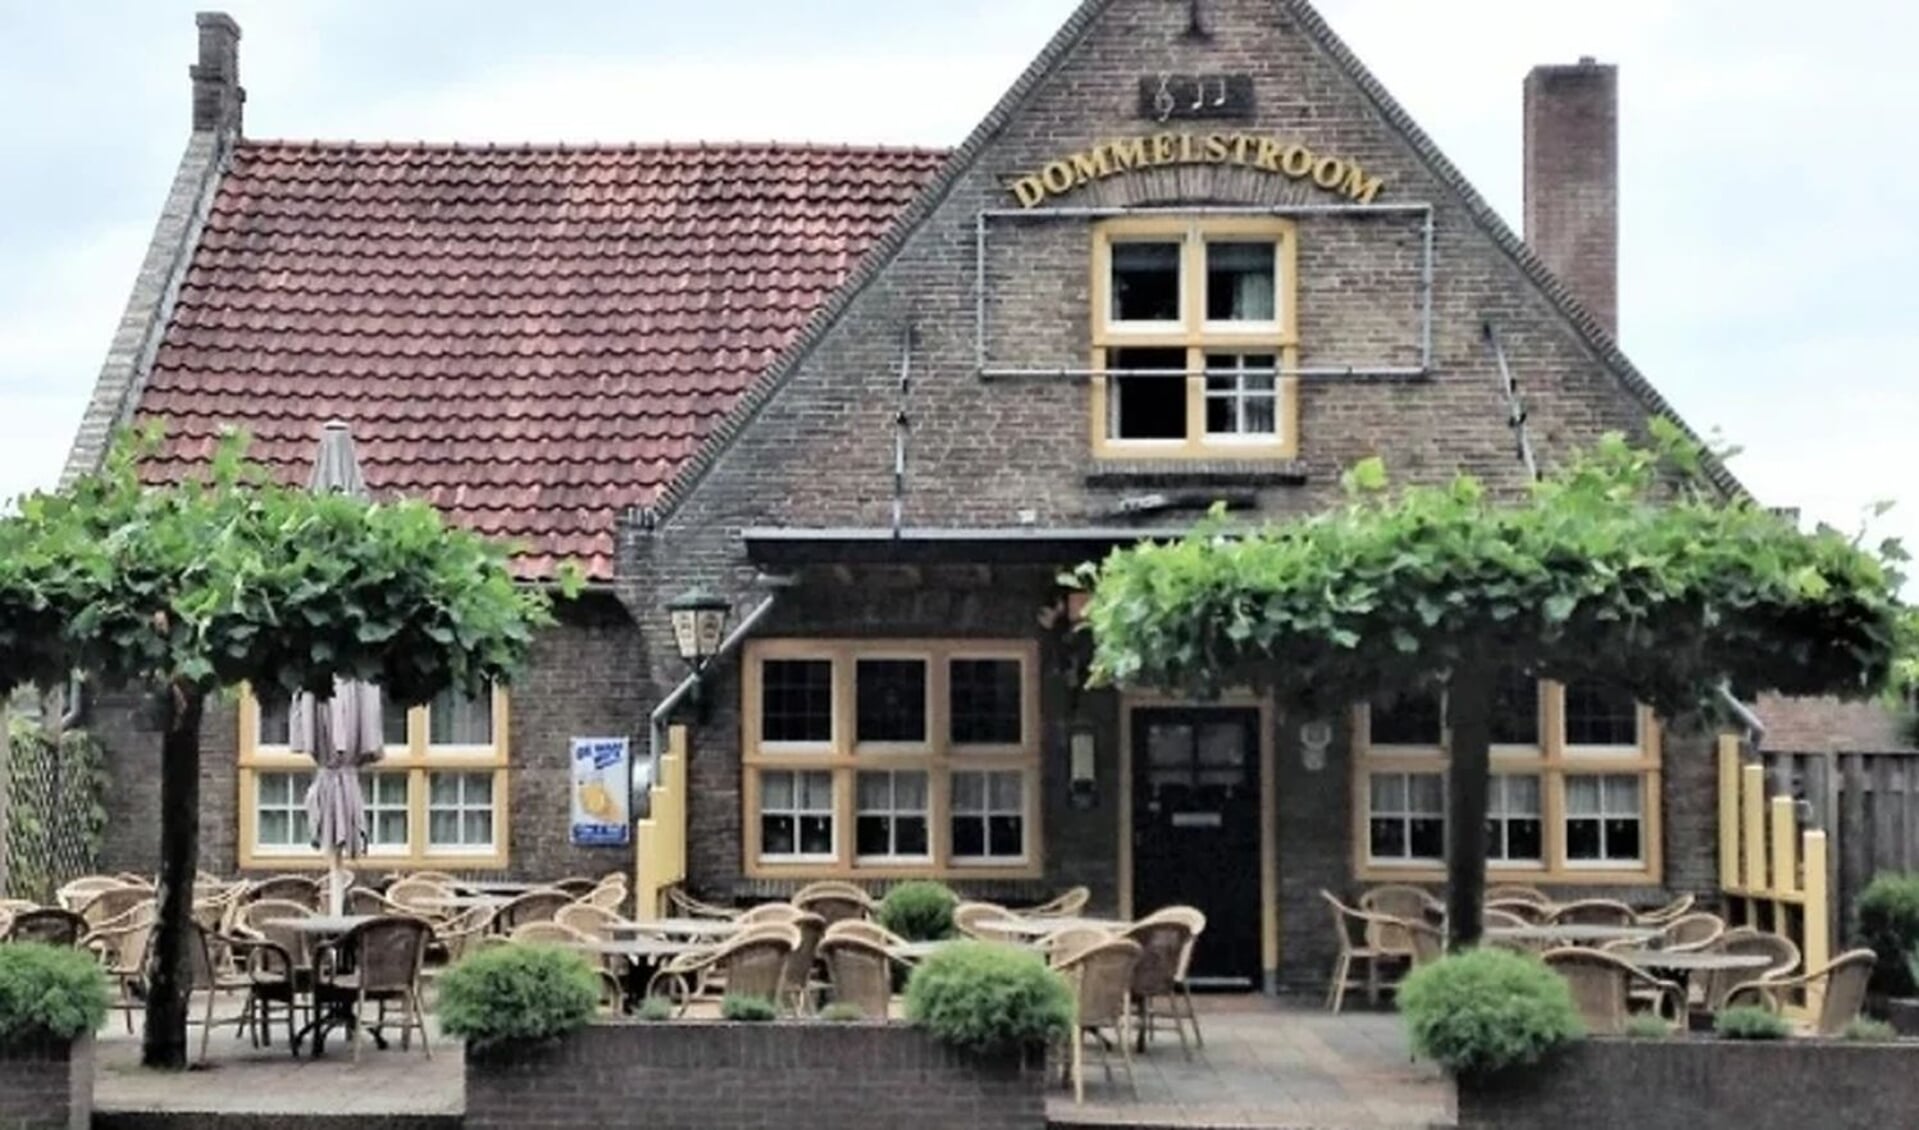 Café-zaal de Dommelstroom is al sinds jaar en dag de thuisbasis van het Alzheimer Café.